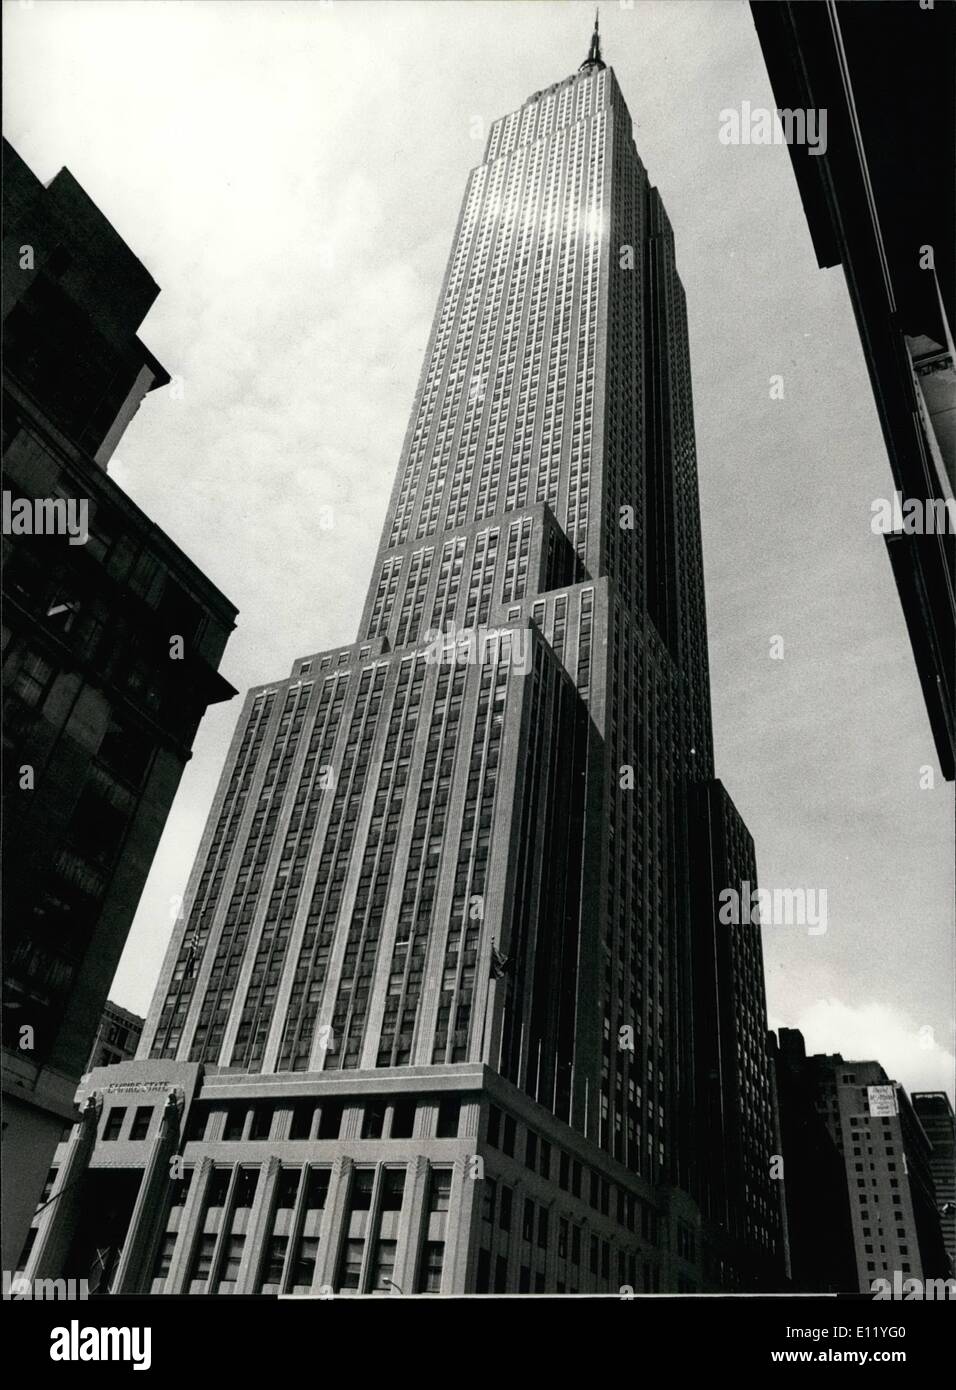 Apr. 04, 1981 - 5° anniverasayr dell'Empire State Building l'Empire State Building, una volta che tutto il mondo più grande edificio, è completato è il cinquantesimo anniversario il 1 maggio. Sebbene altri giganteschi edifici come il new york world trade center e la sears- torri presso Chicago sopra i 449 metri di altezza ''Empire State '' è oggi tuttavia una attrazione per migliaia di turisti in visita a new york. immagine mostra il ''Empire State building'' nel centro di Manhattan. Foto Stock